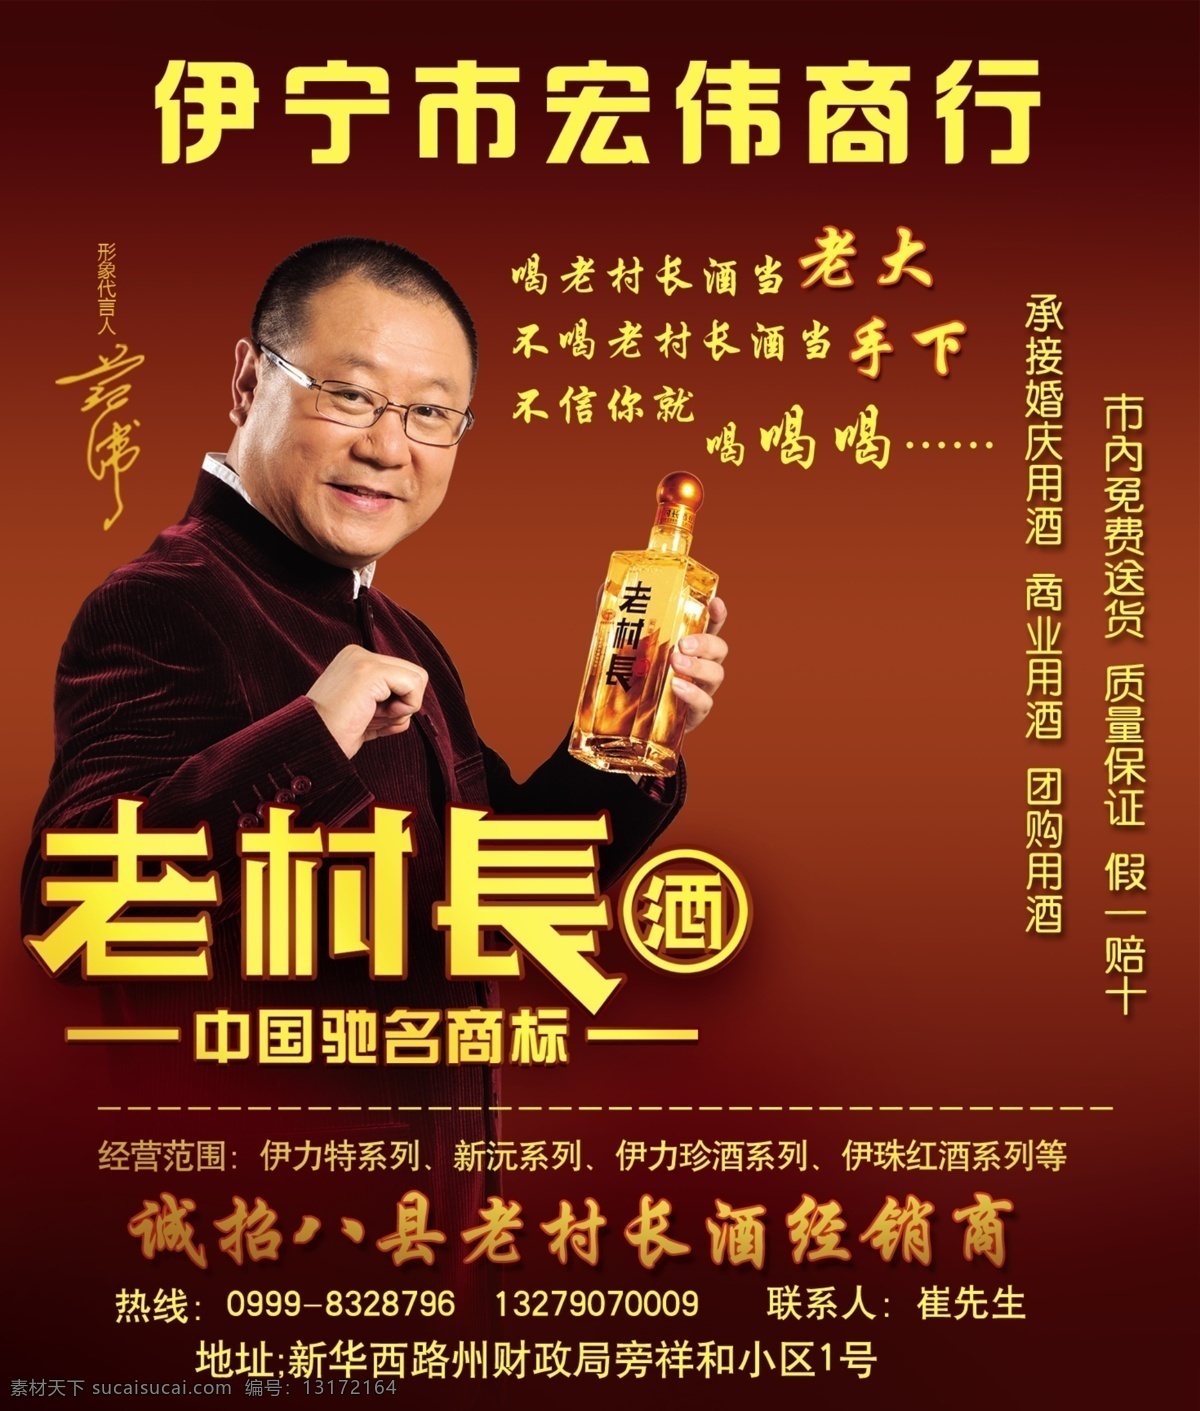 老 村长 酒 广告设计模板 源文件 中国驰名商标 老村长酒 老村长 范伟代言 诚招加盟 其他海报设计